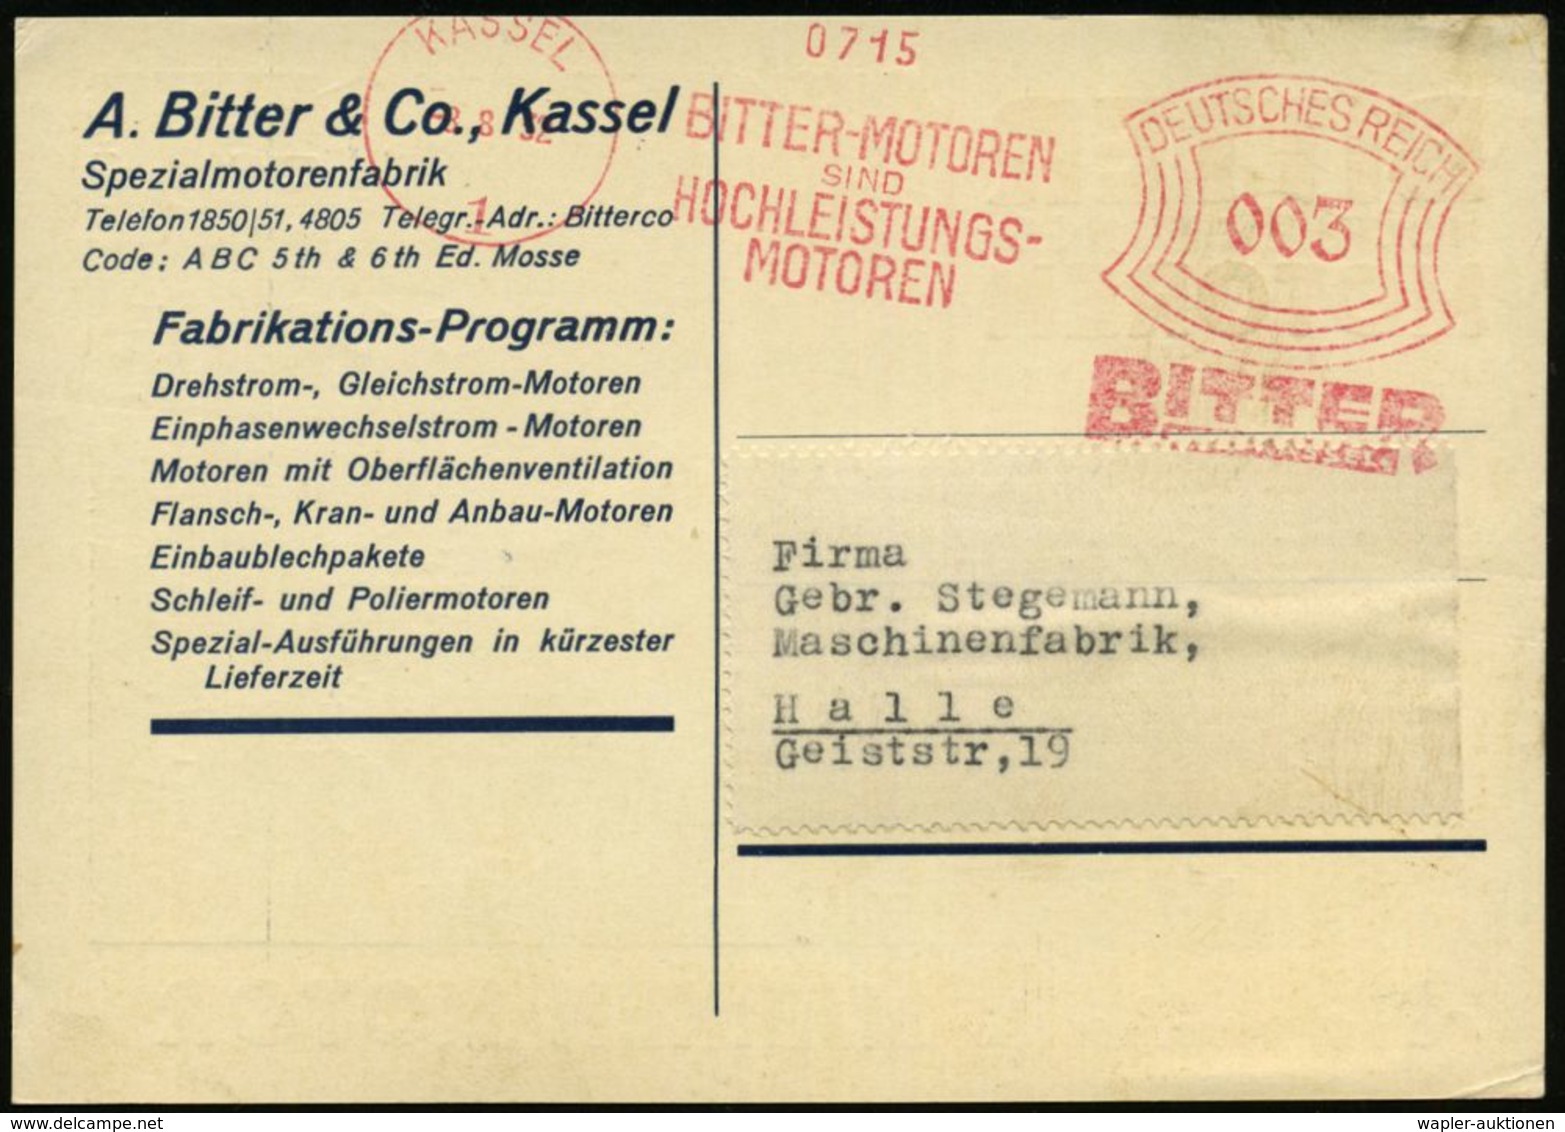 KASSEL/ 1/ BITTER-MOTOREN/ SIND/ HOCHLEISTUNGS-/ MOTOREN 1932 (8.8.) AFS , Dekorative, Zweifarbige.Reklame-Ak.: E-Motor  - Elettricità